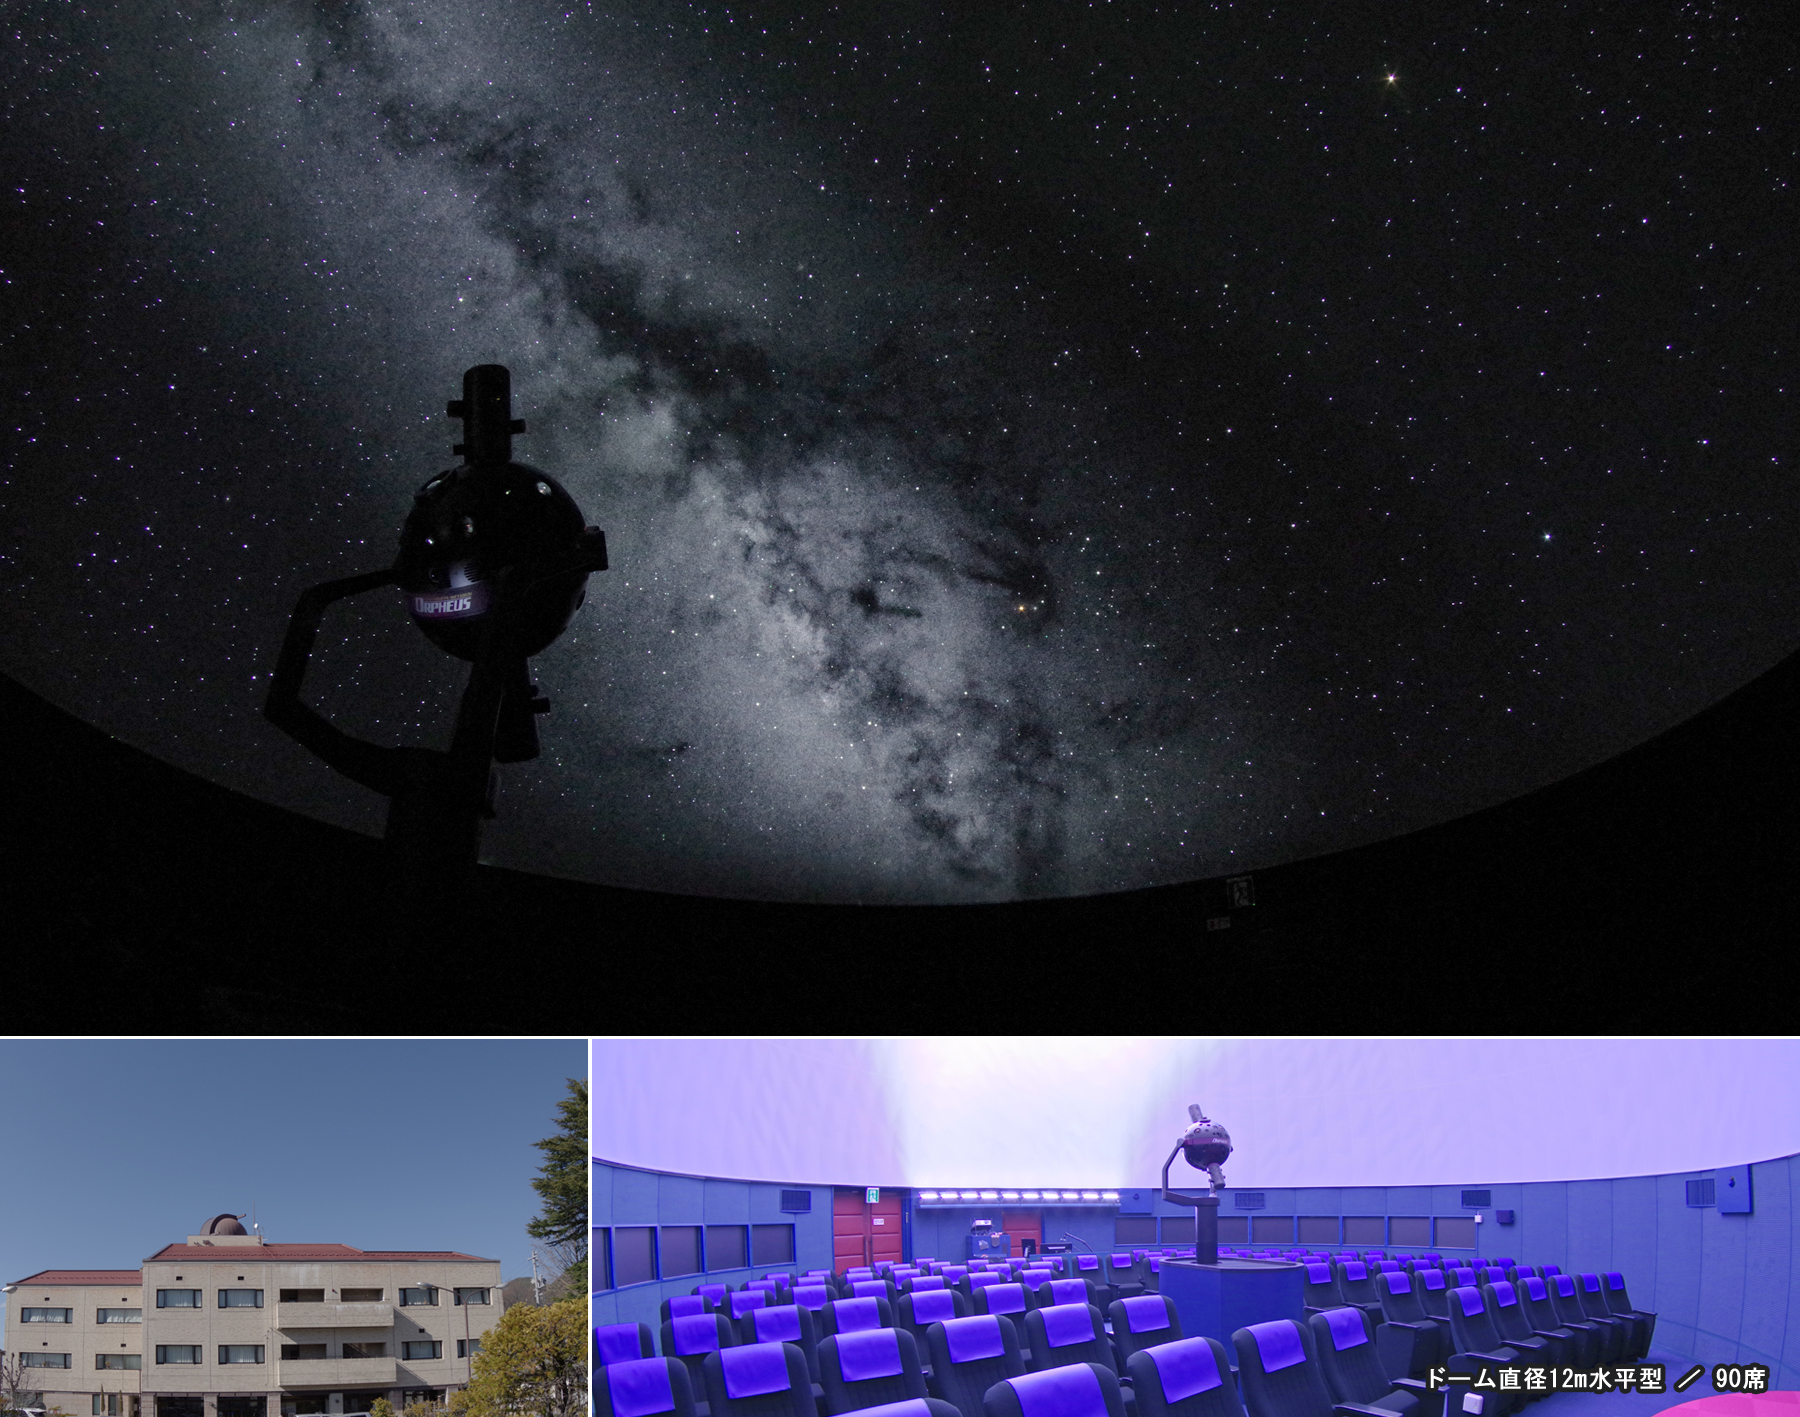 松本市教育文化センターのプラネタリウムがリニューアル13年ぶりに輝く 光学式プラネタリウムの星空 株式会社 五藤光学研究所